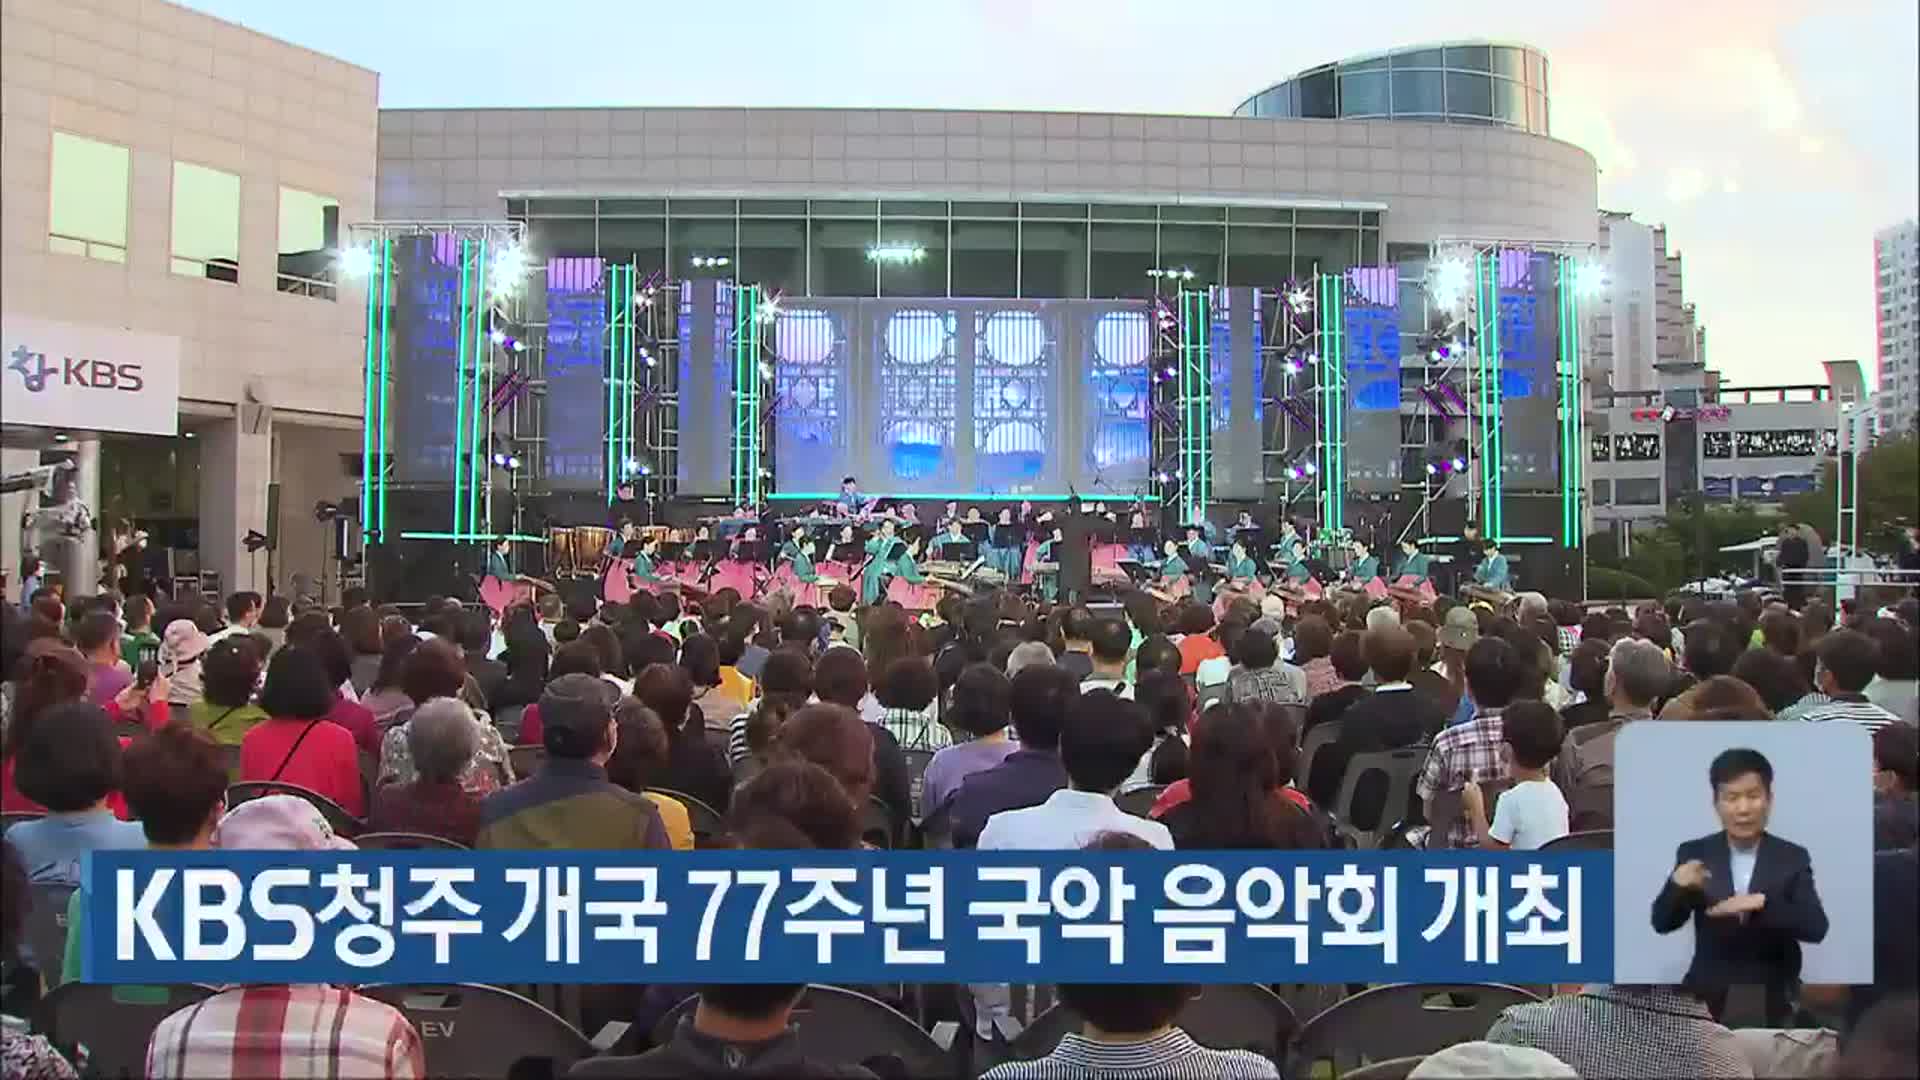 KBS청주 개국 77주년 국악 음악회 개최